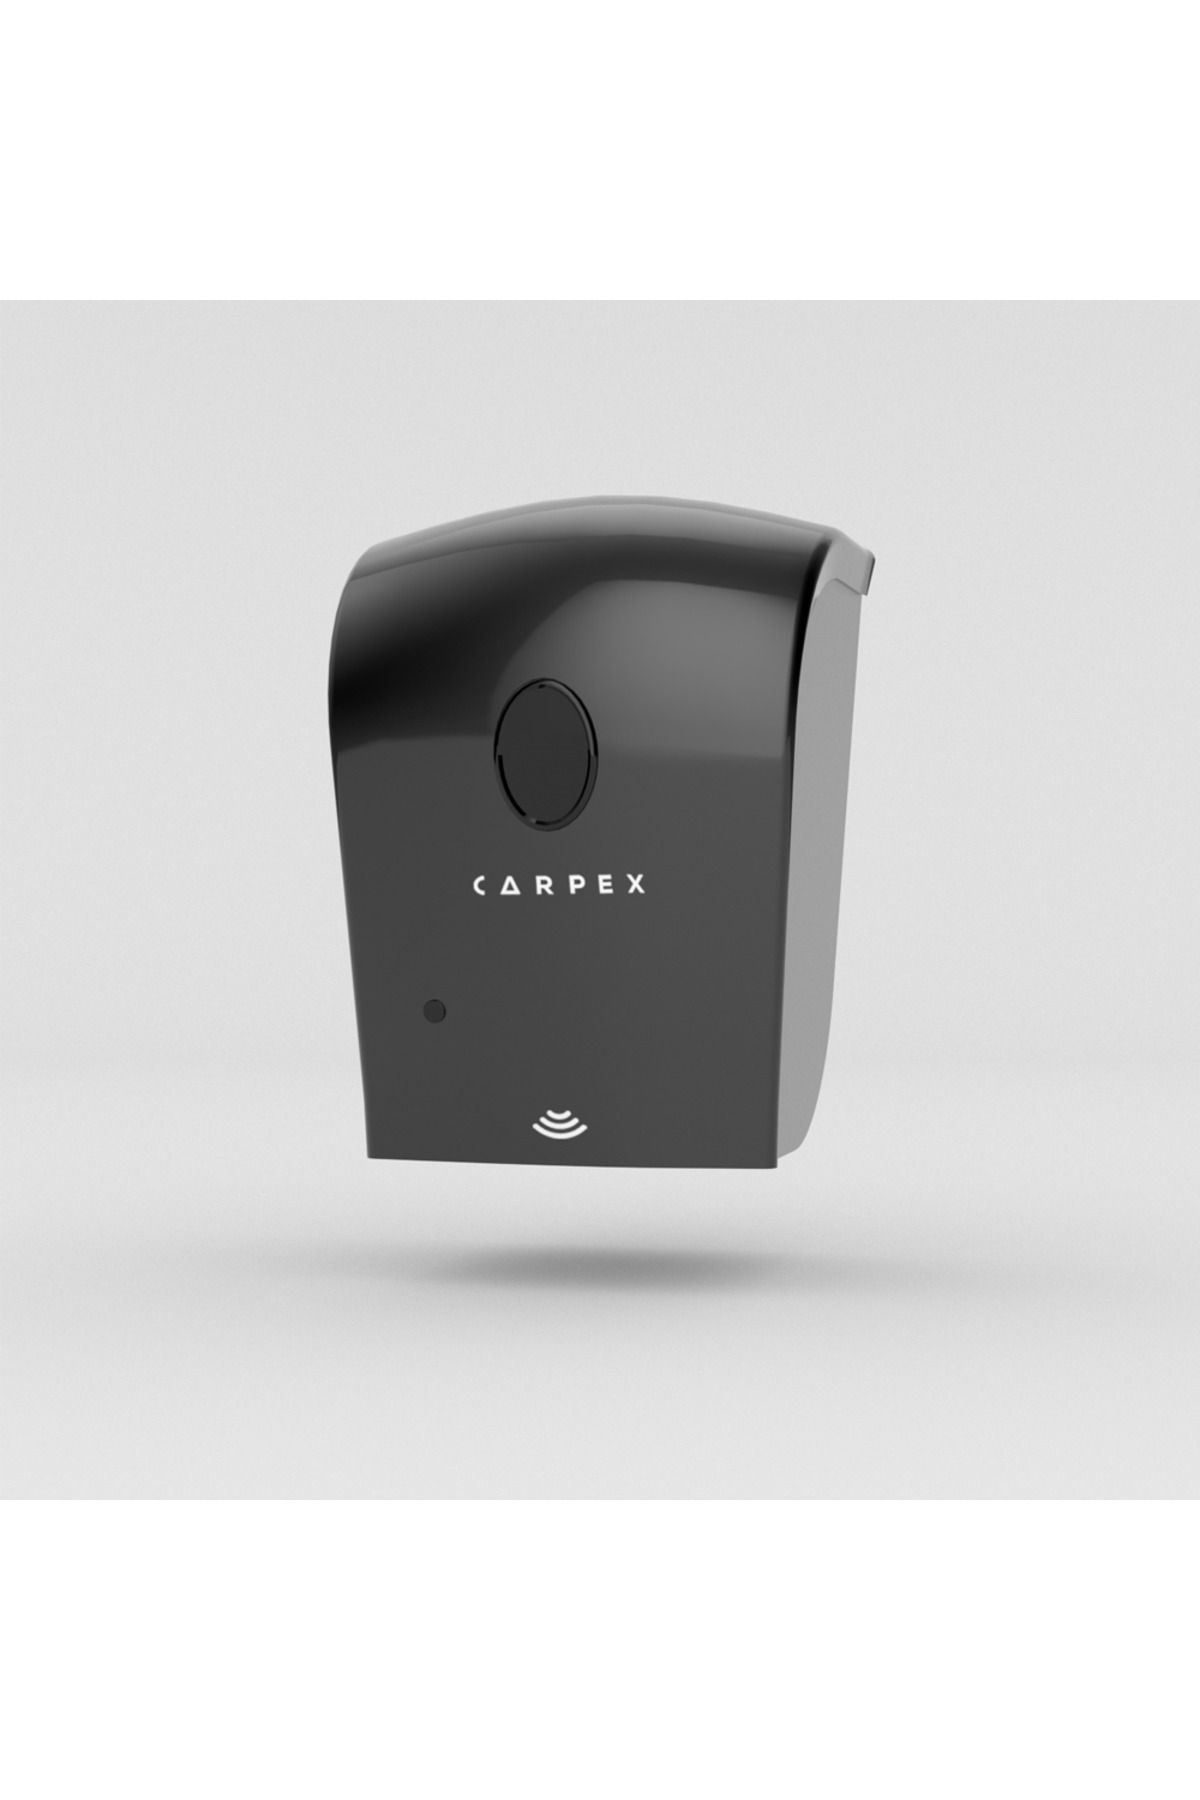 Carpex Otomatik Sensörlü Siyah Köpük Sabun Dispenseri Hazneli